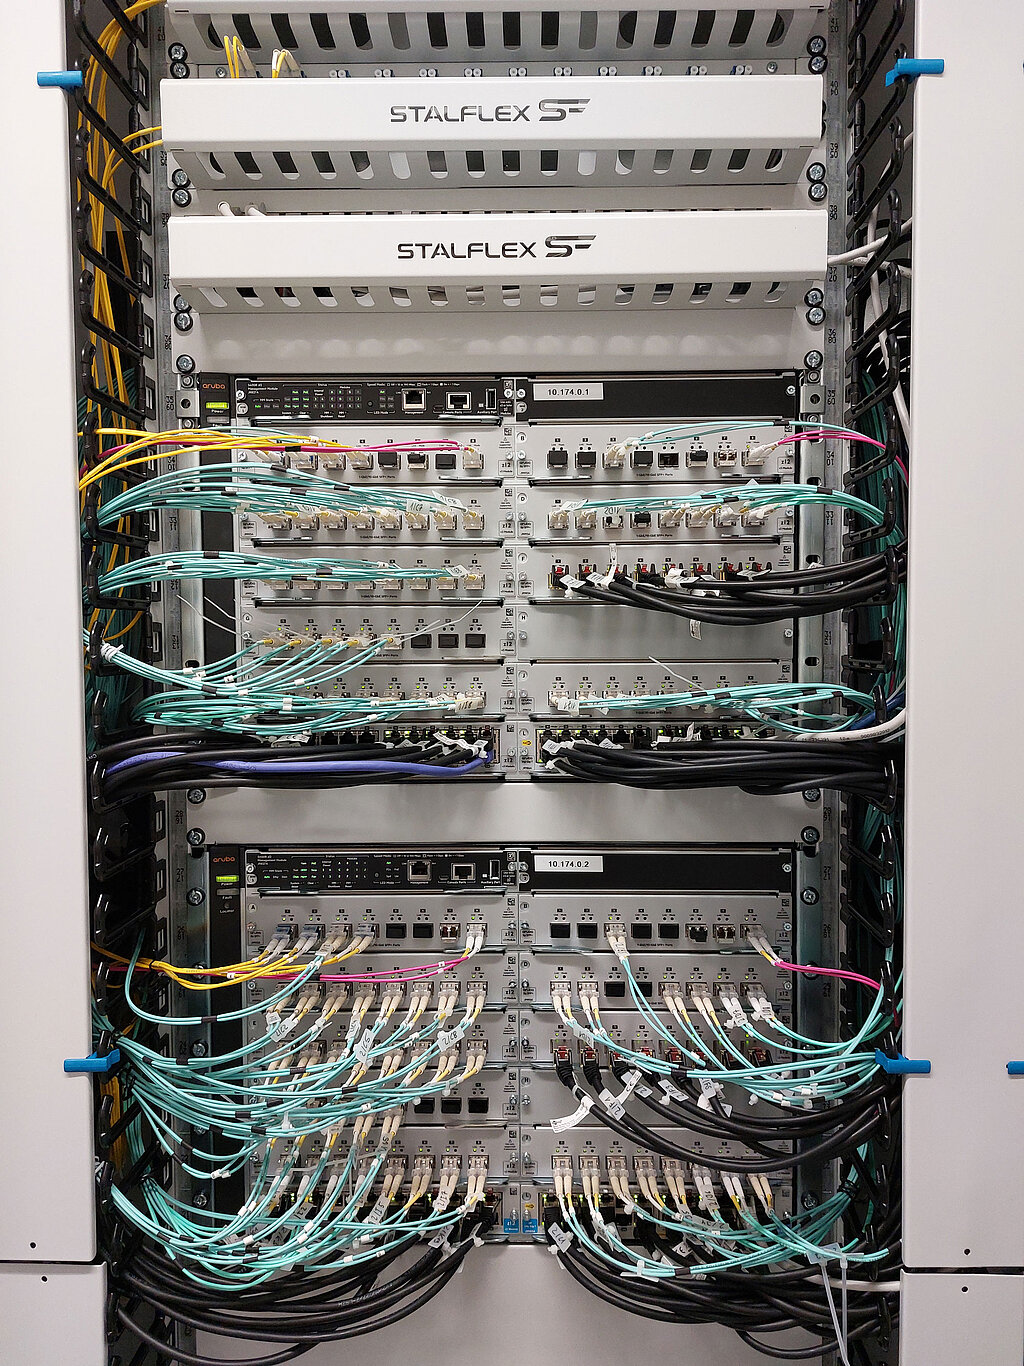 Ein Serverraum von innen mit diversen Kabeln und Anschlüssen